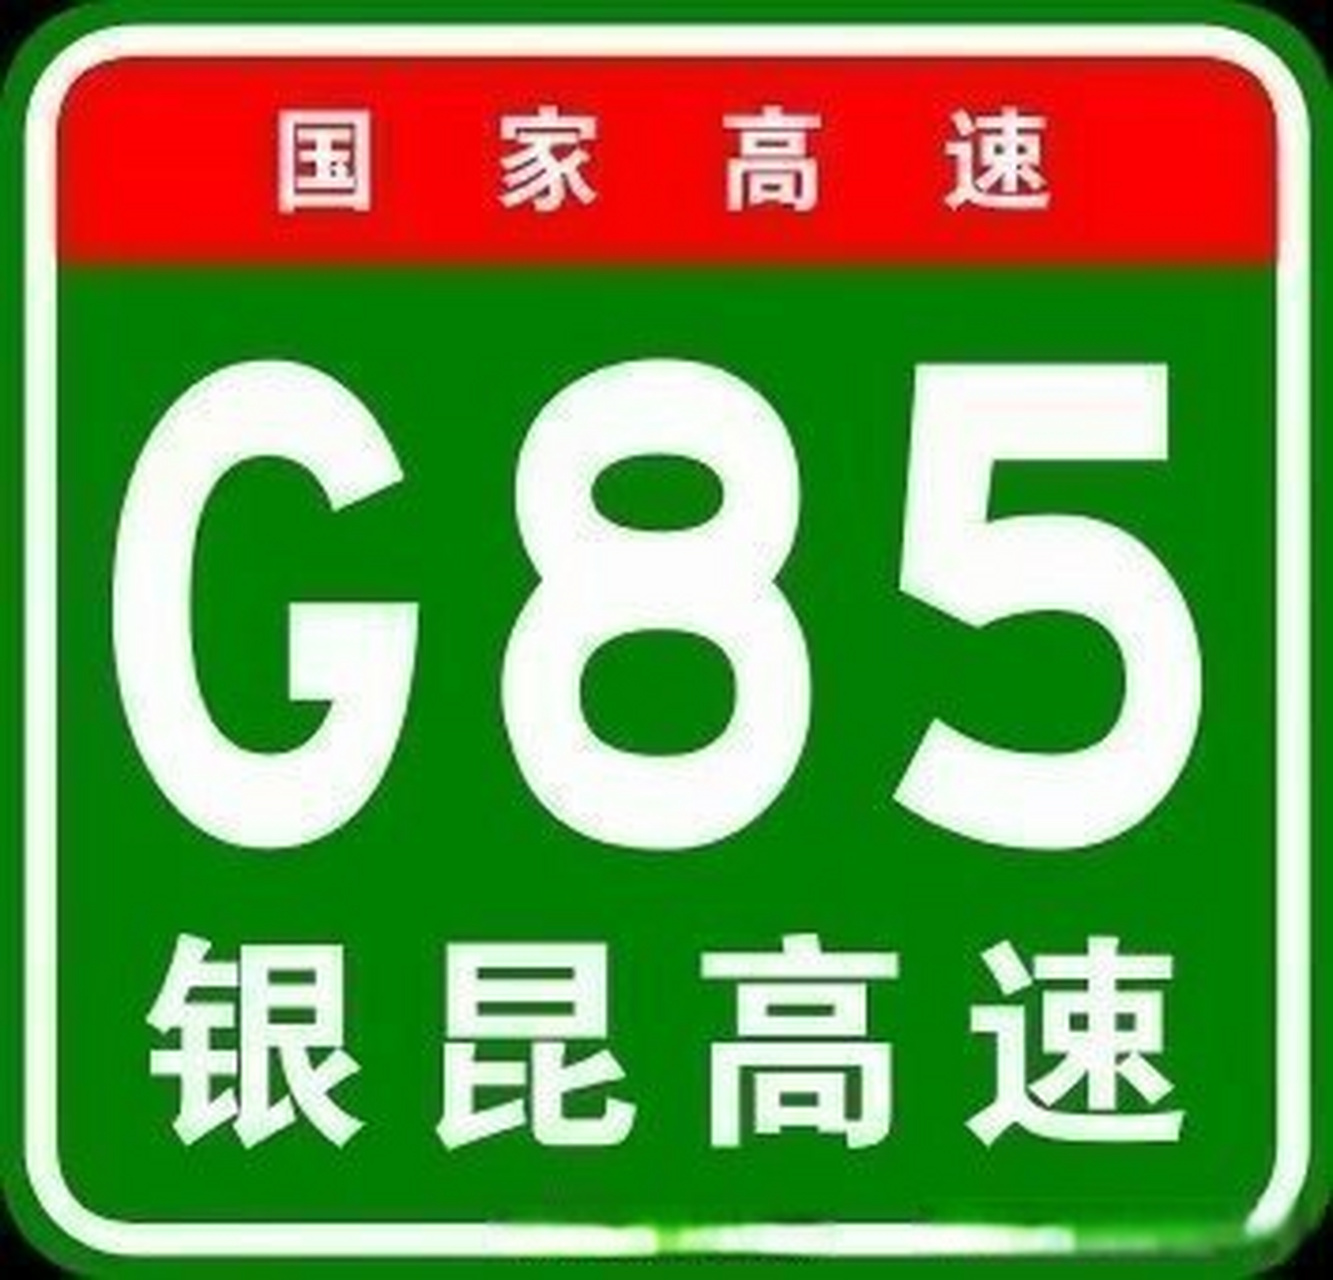 g85银昆高速公路昭通段k1612 700m(盐津县境内上村隧道)路段,一辆货车